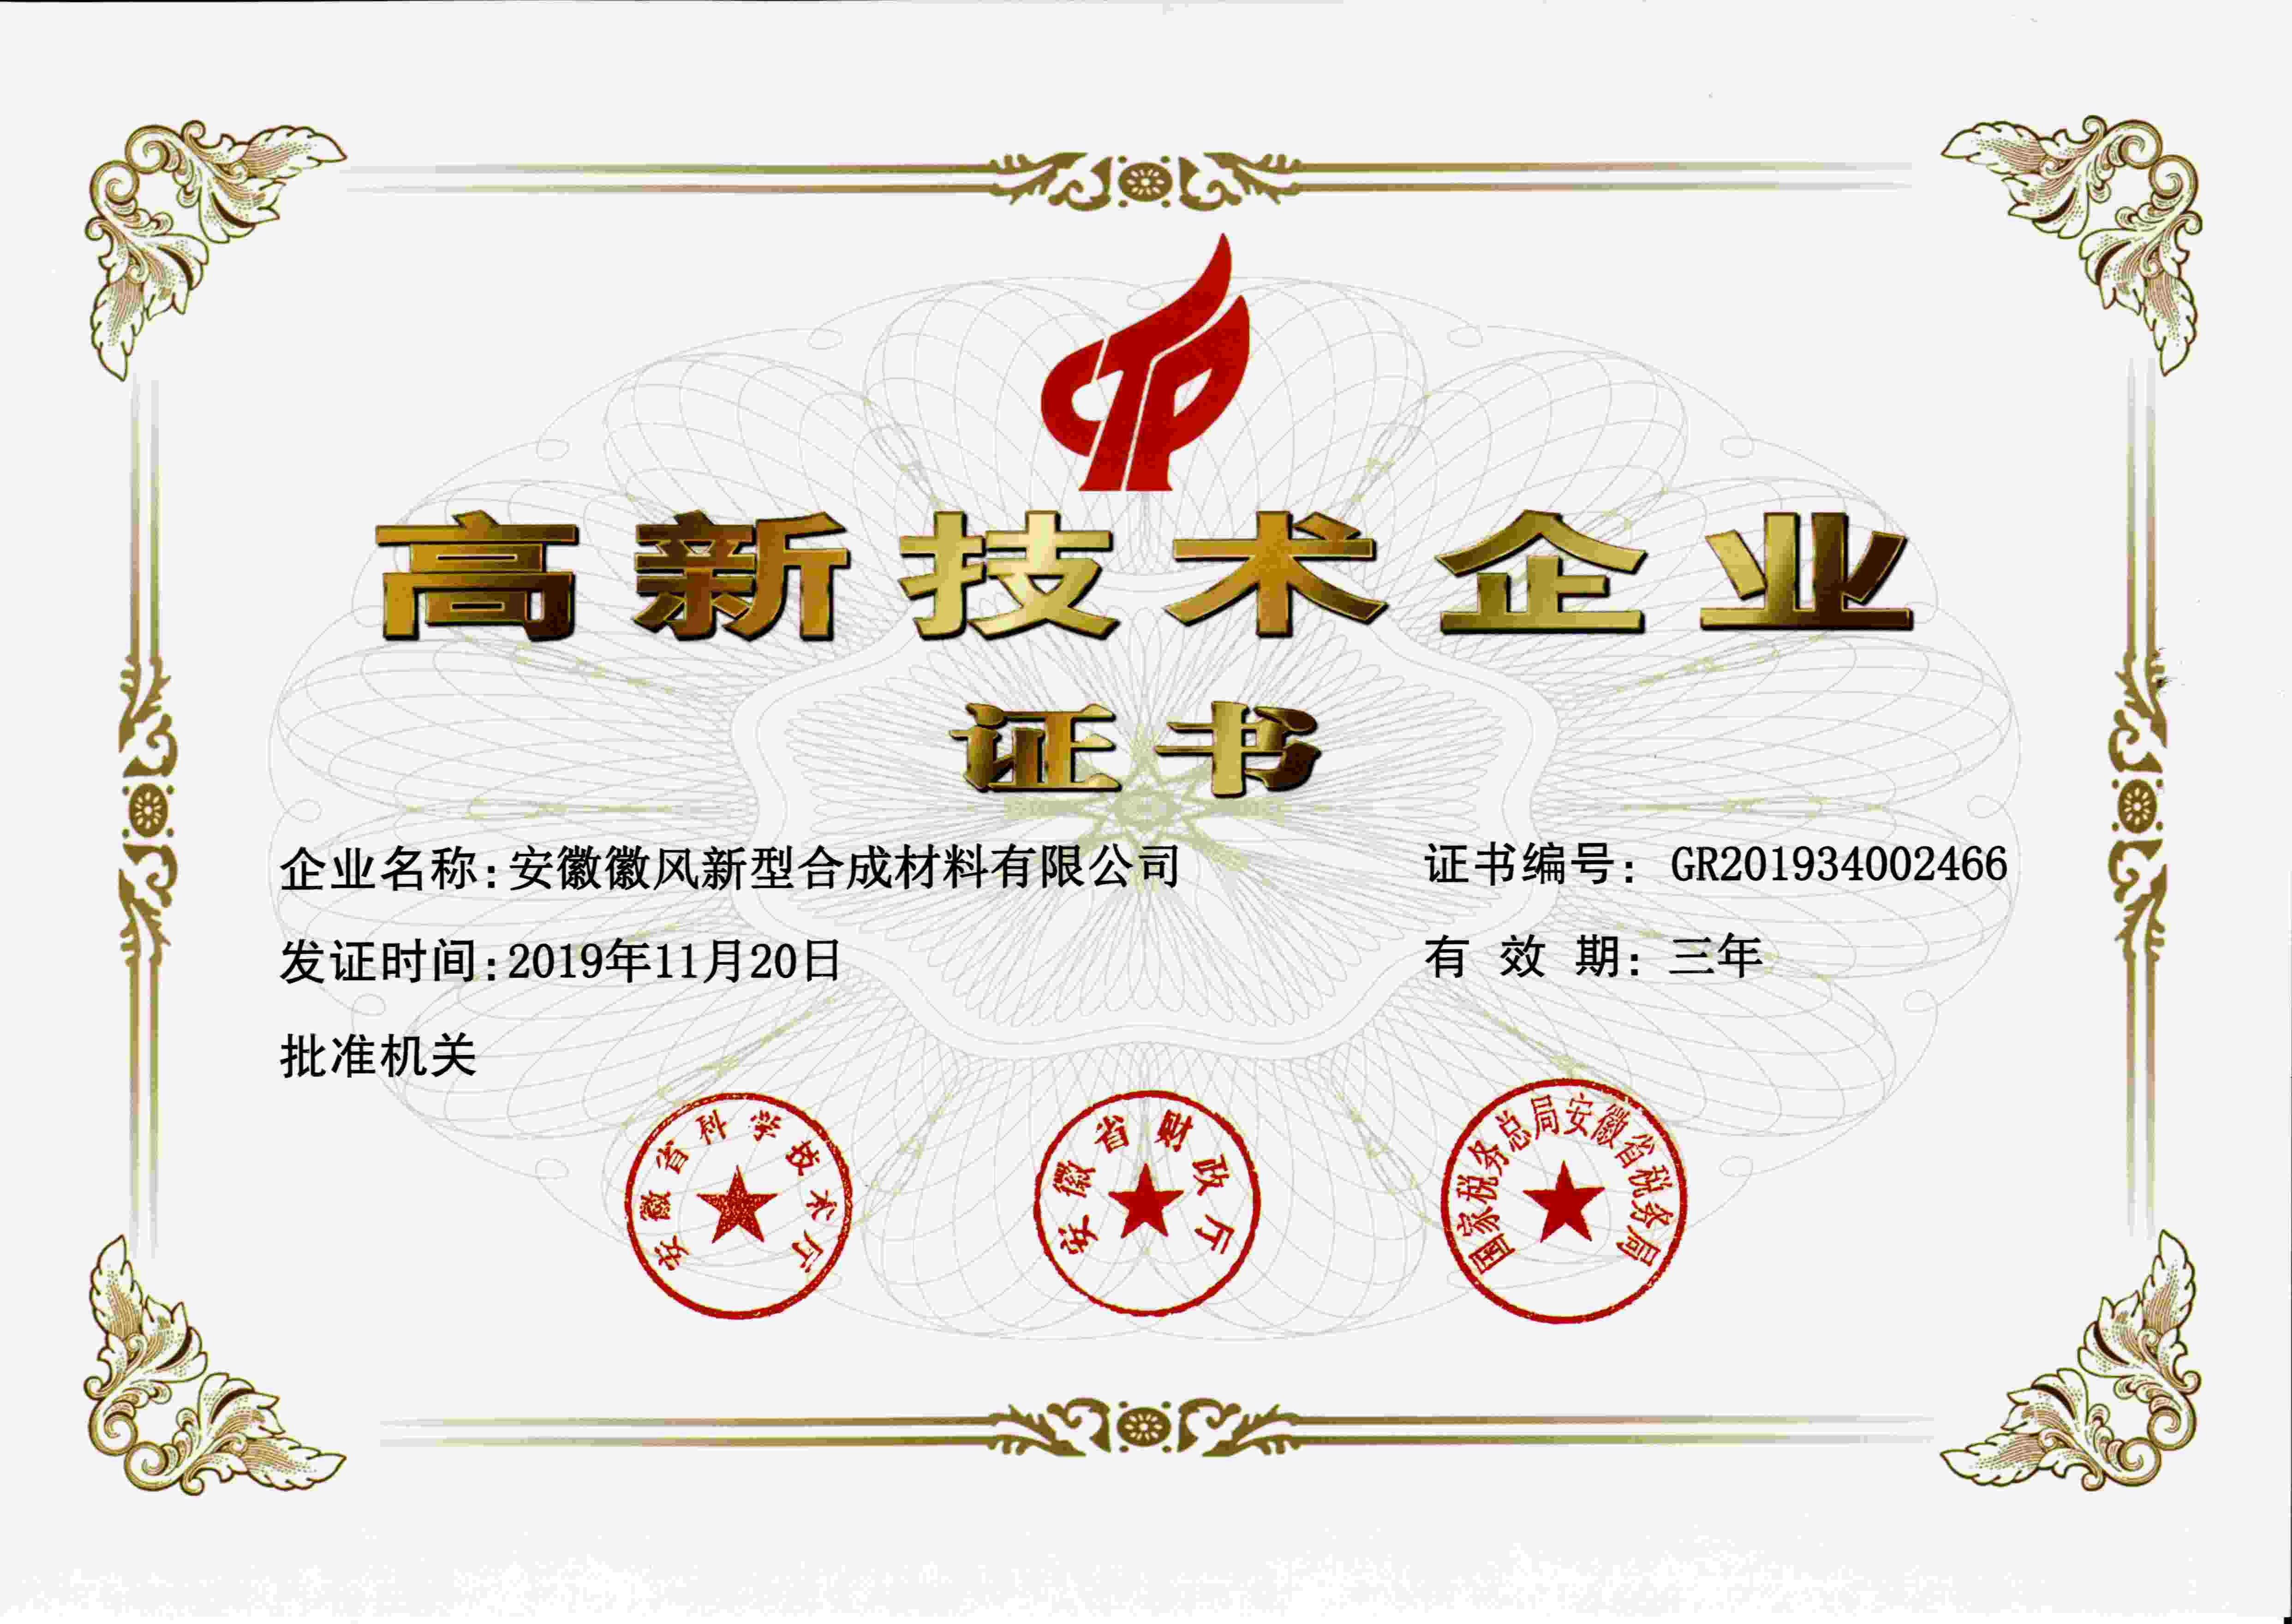 2019年11月安徽徽風榮獲國家級高新技術企業稱號